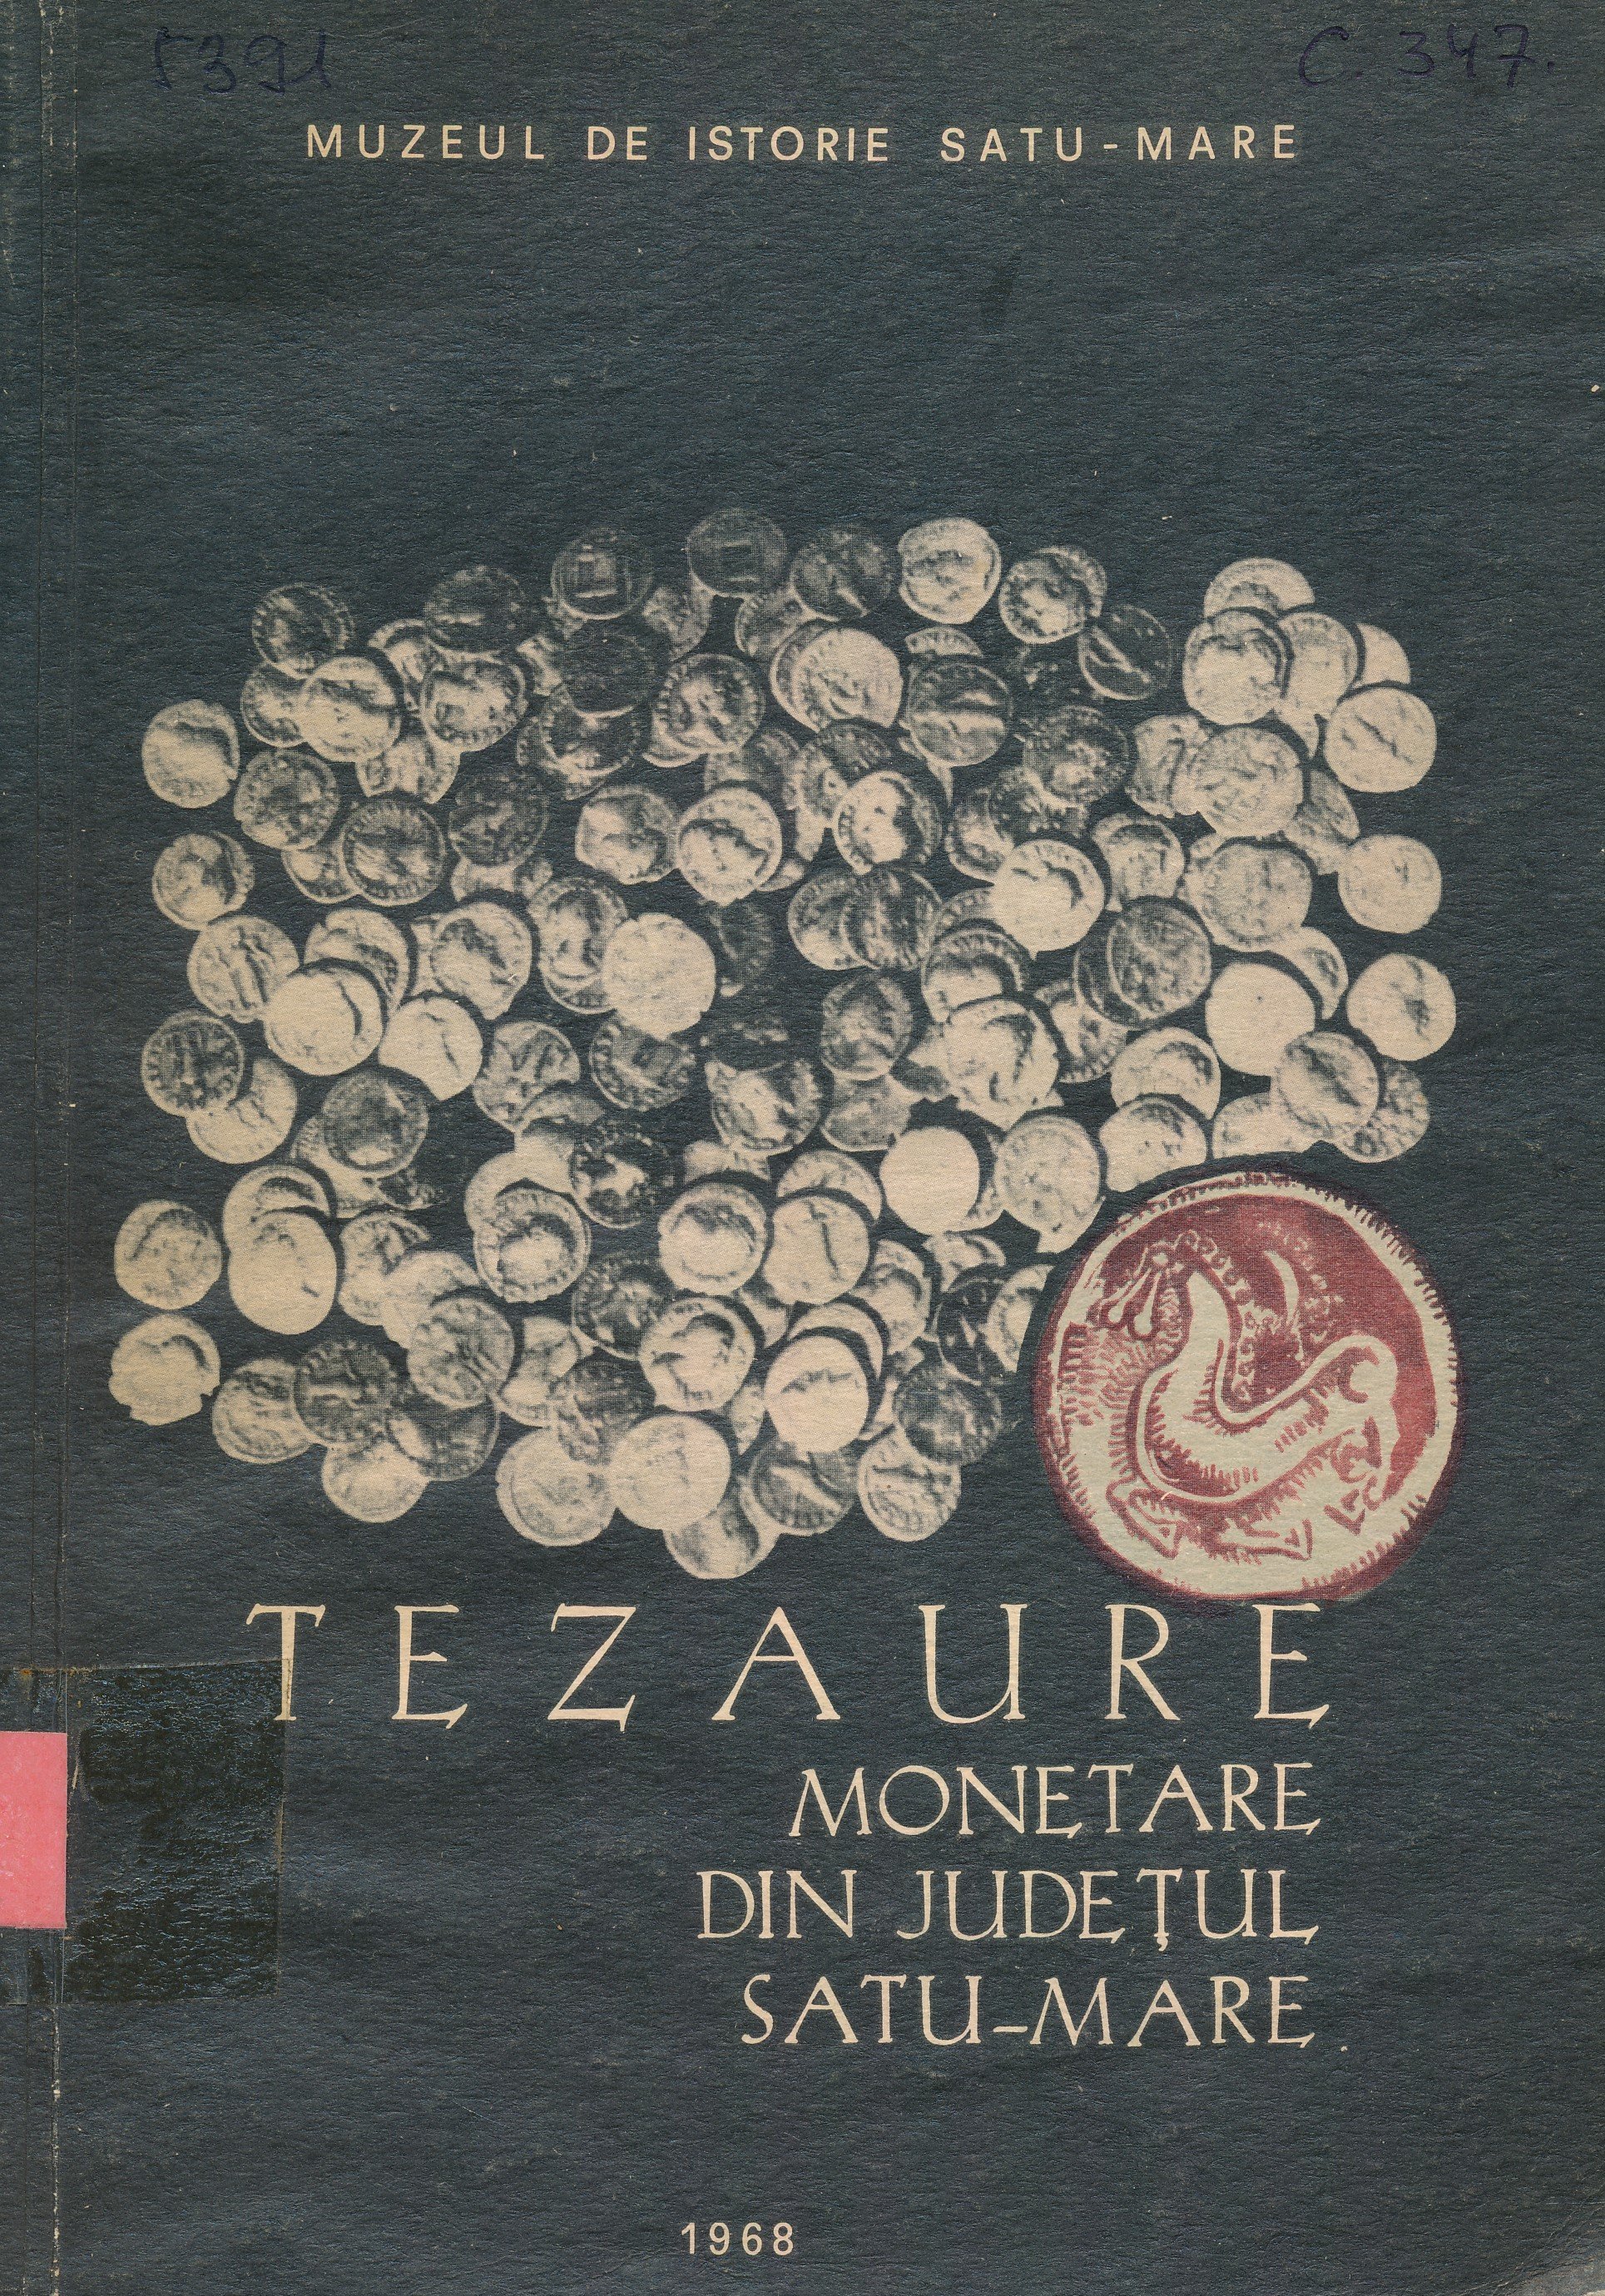 Tezaure Monetare din Județul Satu - Mare (Erkel Ferenc Múzeum és Könyvtár, Gyula CC BY-NC-SA)